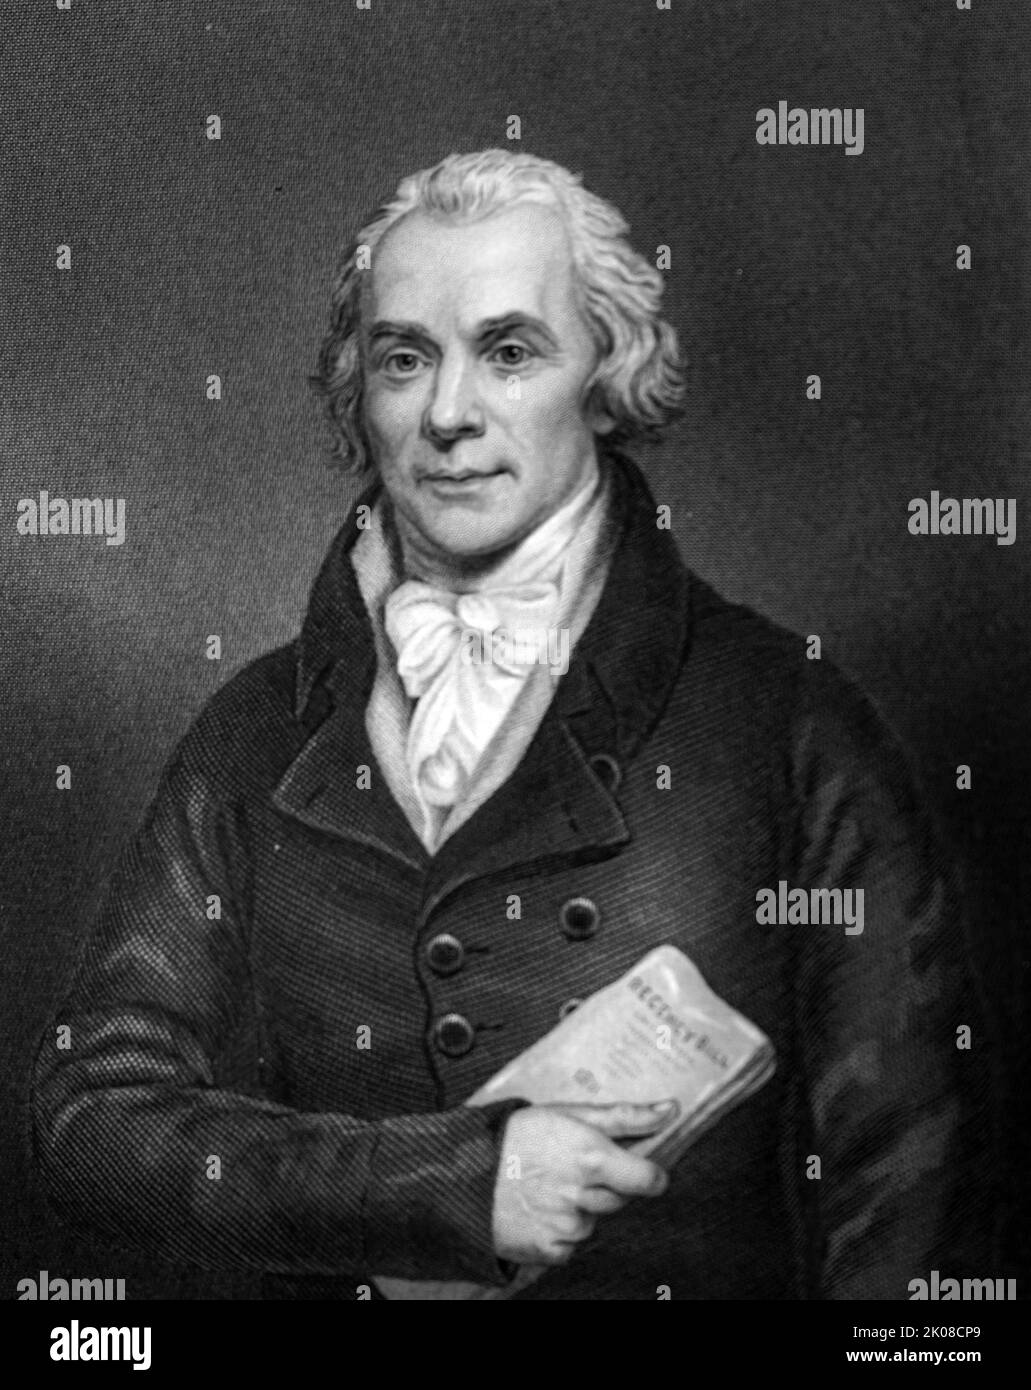 Spencer Perceval KC (1 novembre 1762 - 11 mai 1812) était un homme d'État et avocat britannique qui a servi comme Premier ministre du Royaume-Uni d'octobre 1809 jusqu'à son assassinat en mai 1812. Perceval est le seul Premier ministre britannique à avoir été assassiné et le seul solliciteur général ou procureur général à être devenu Premier ministre Banque D'Images